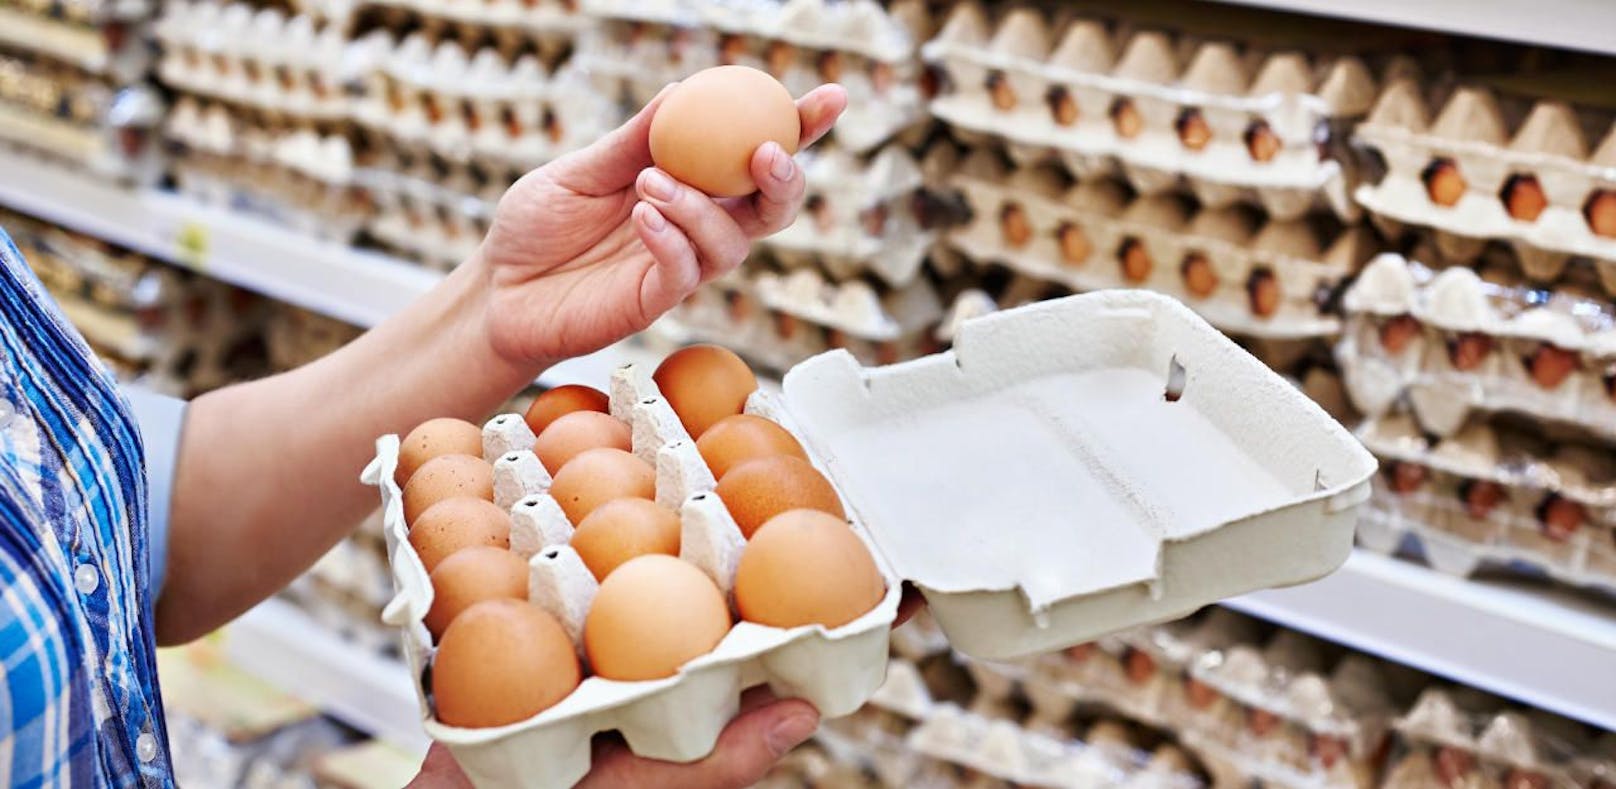 Österreichs Eier sind sicher, sagt die AMA.